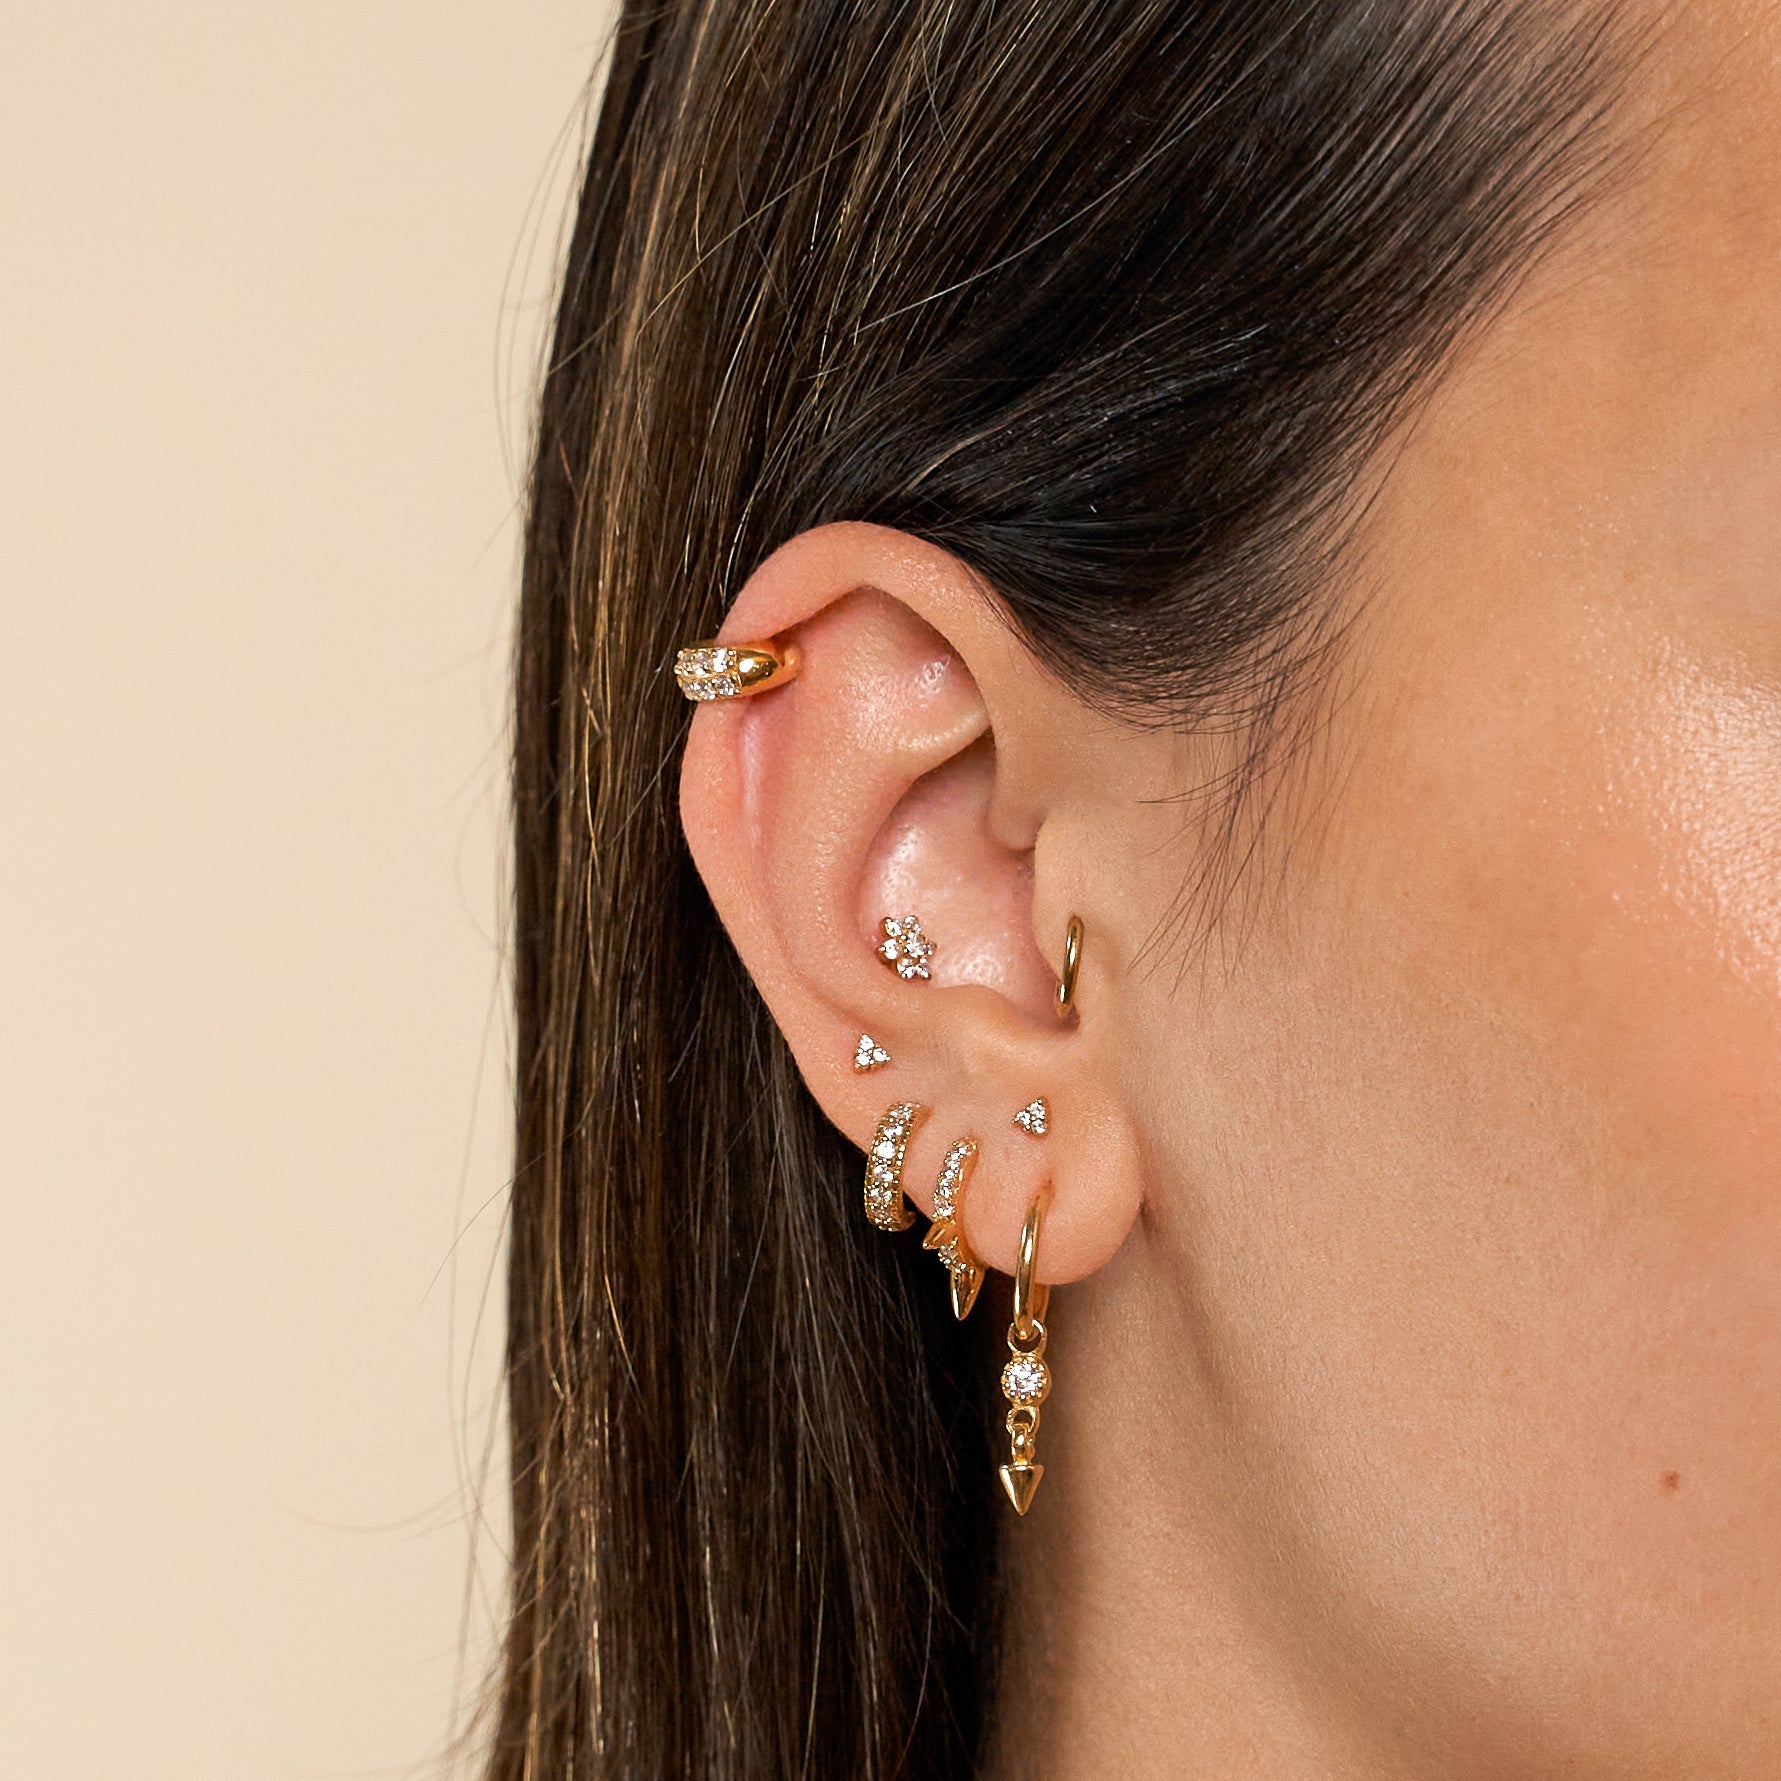 14k Gold Ball Earrings, Post Findings, Unisex Design, 8mm Size - Ruby Lane